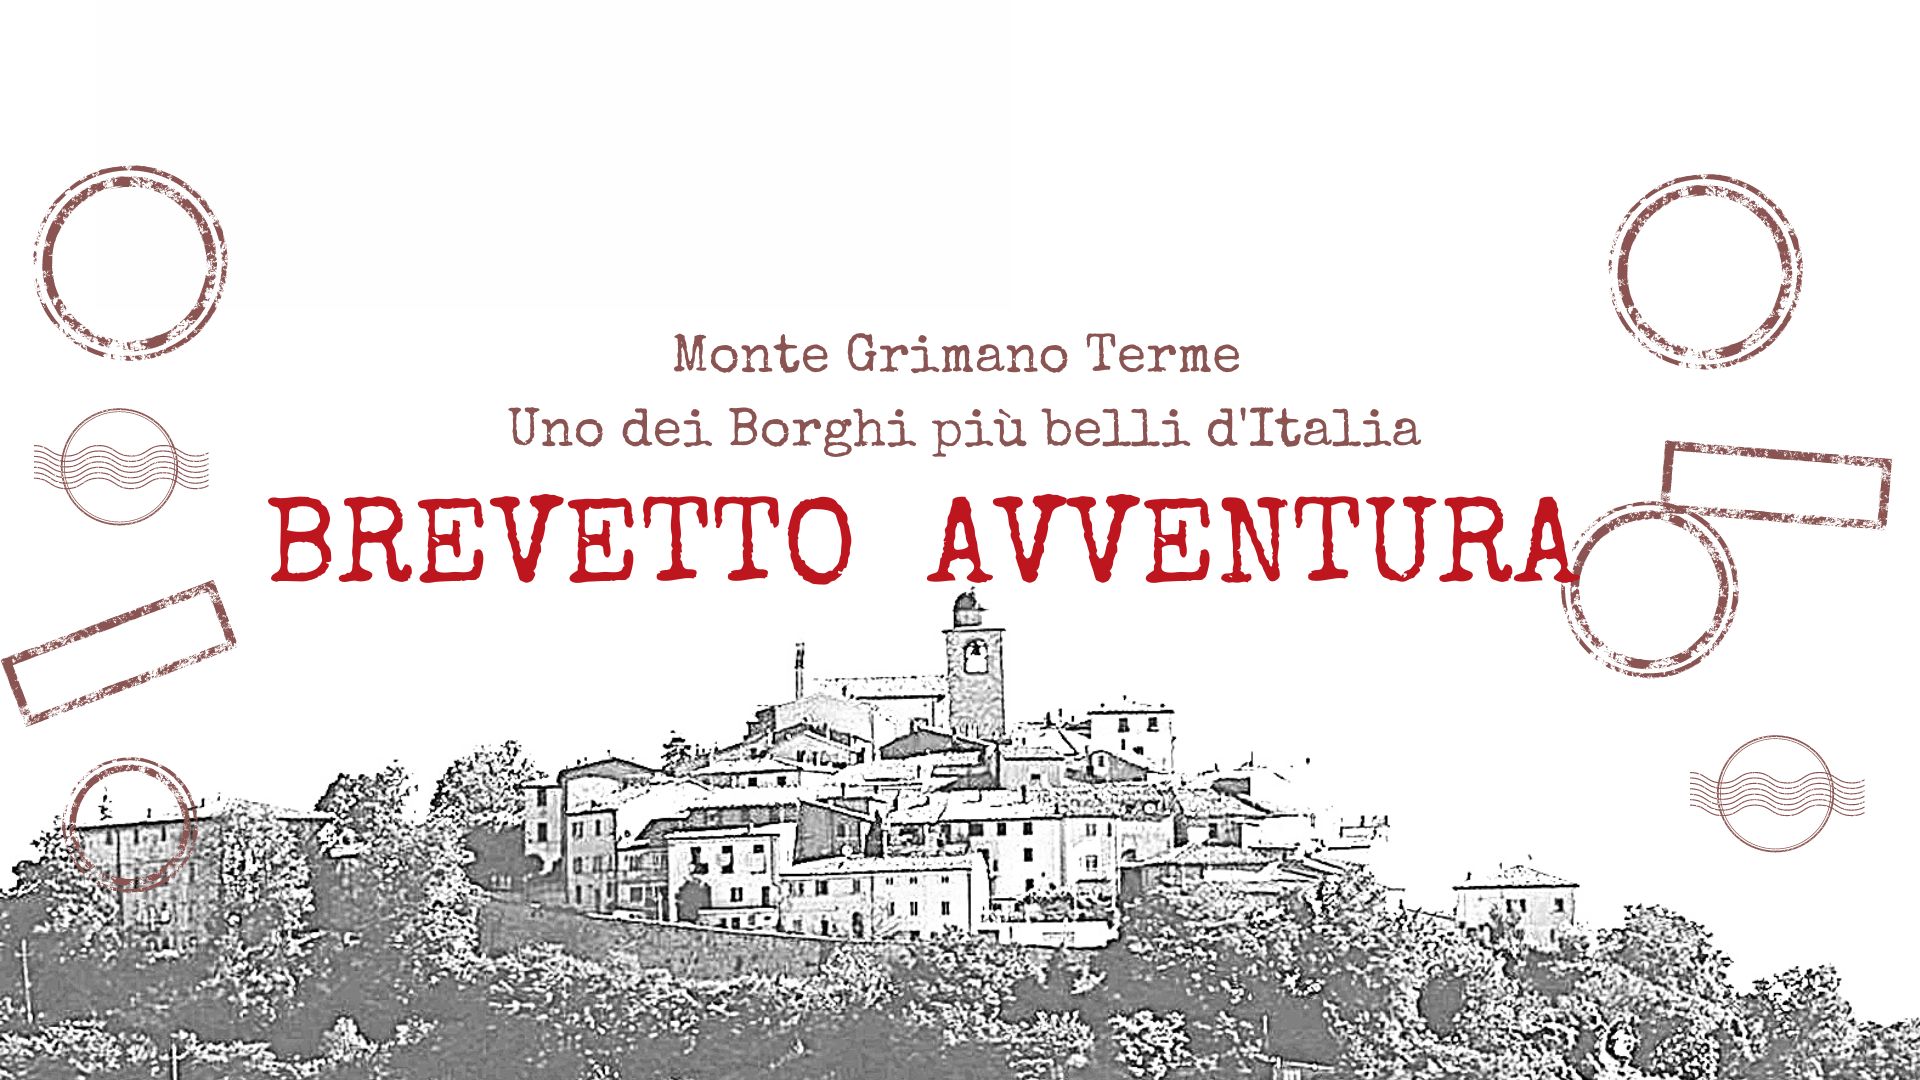 Nasce il Brevetto Avventura: da oggi venire a Monte Grimano Terme è ancora più bello